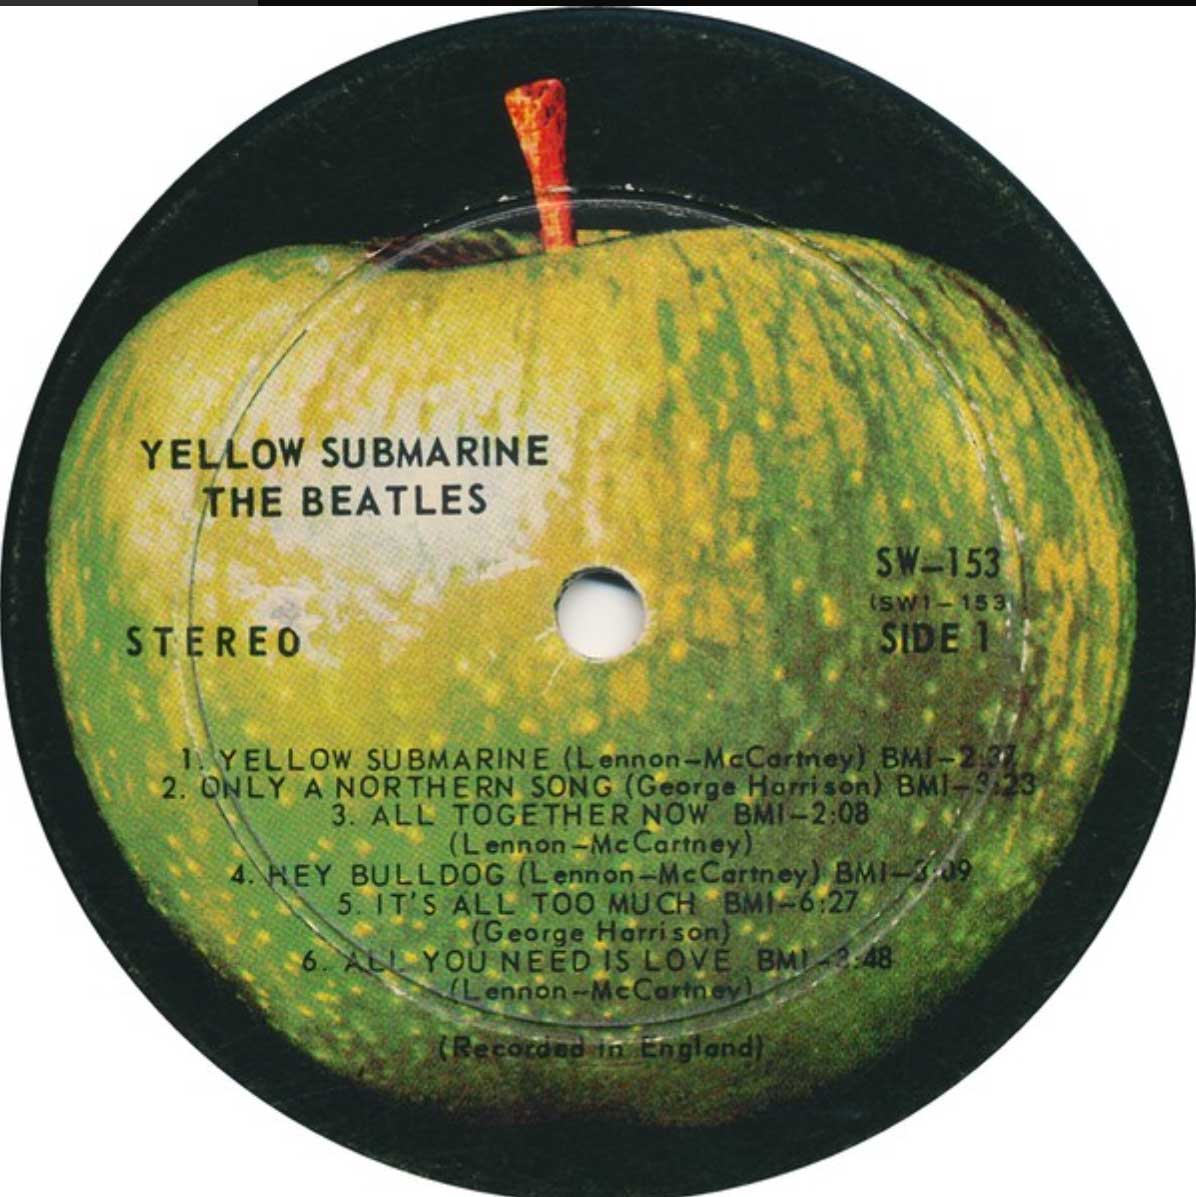 The Beatles - Yellow Submarine - 1969 RARE